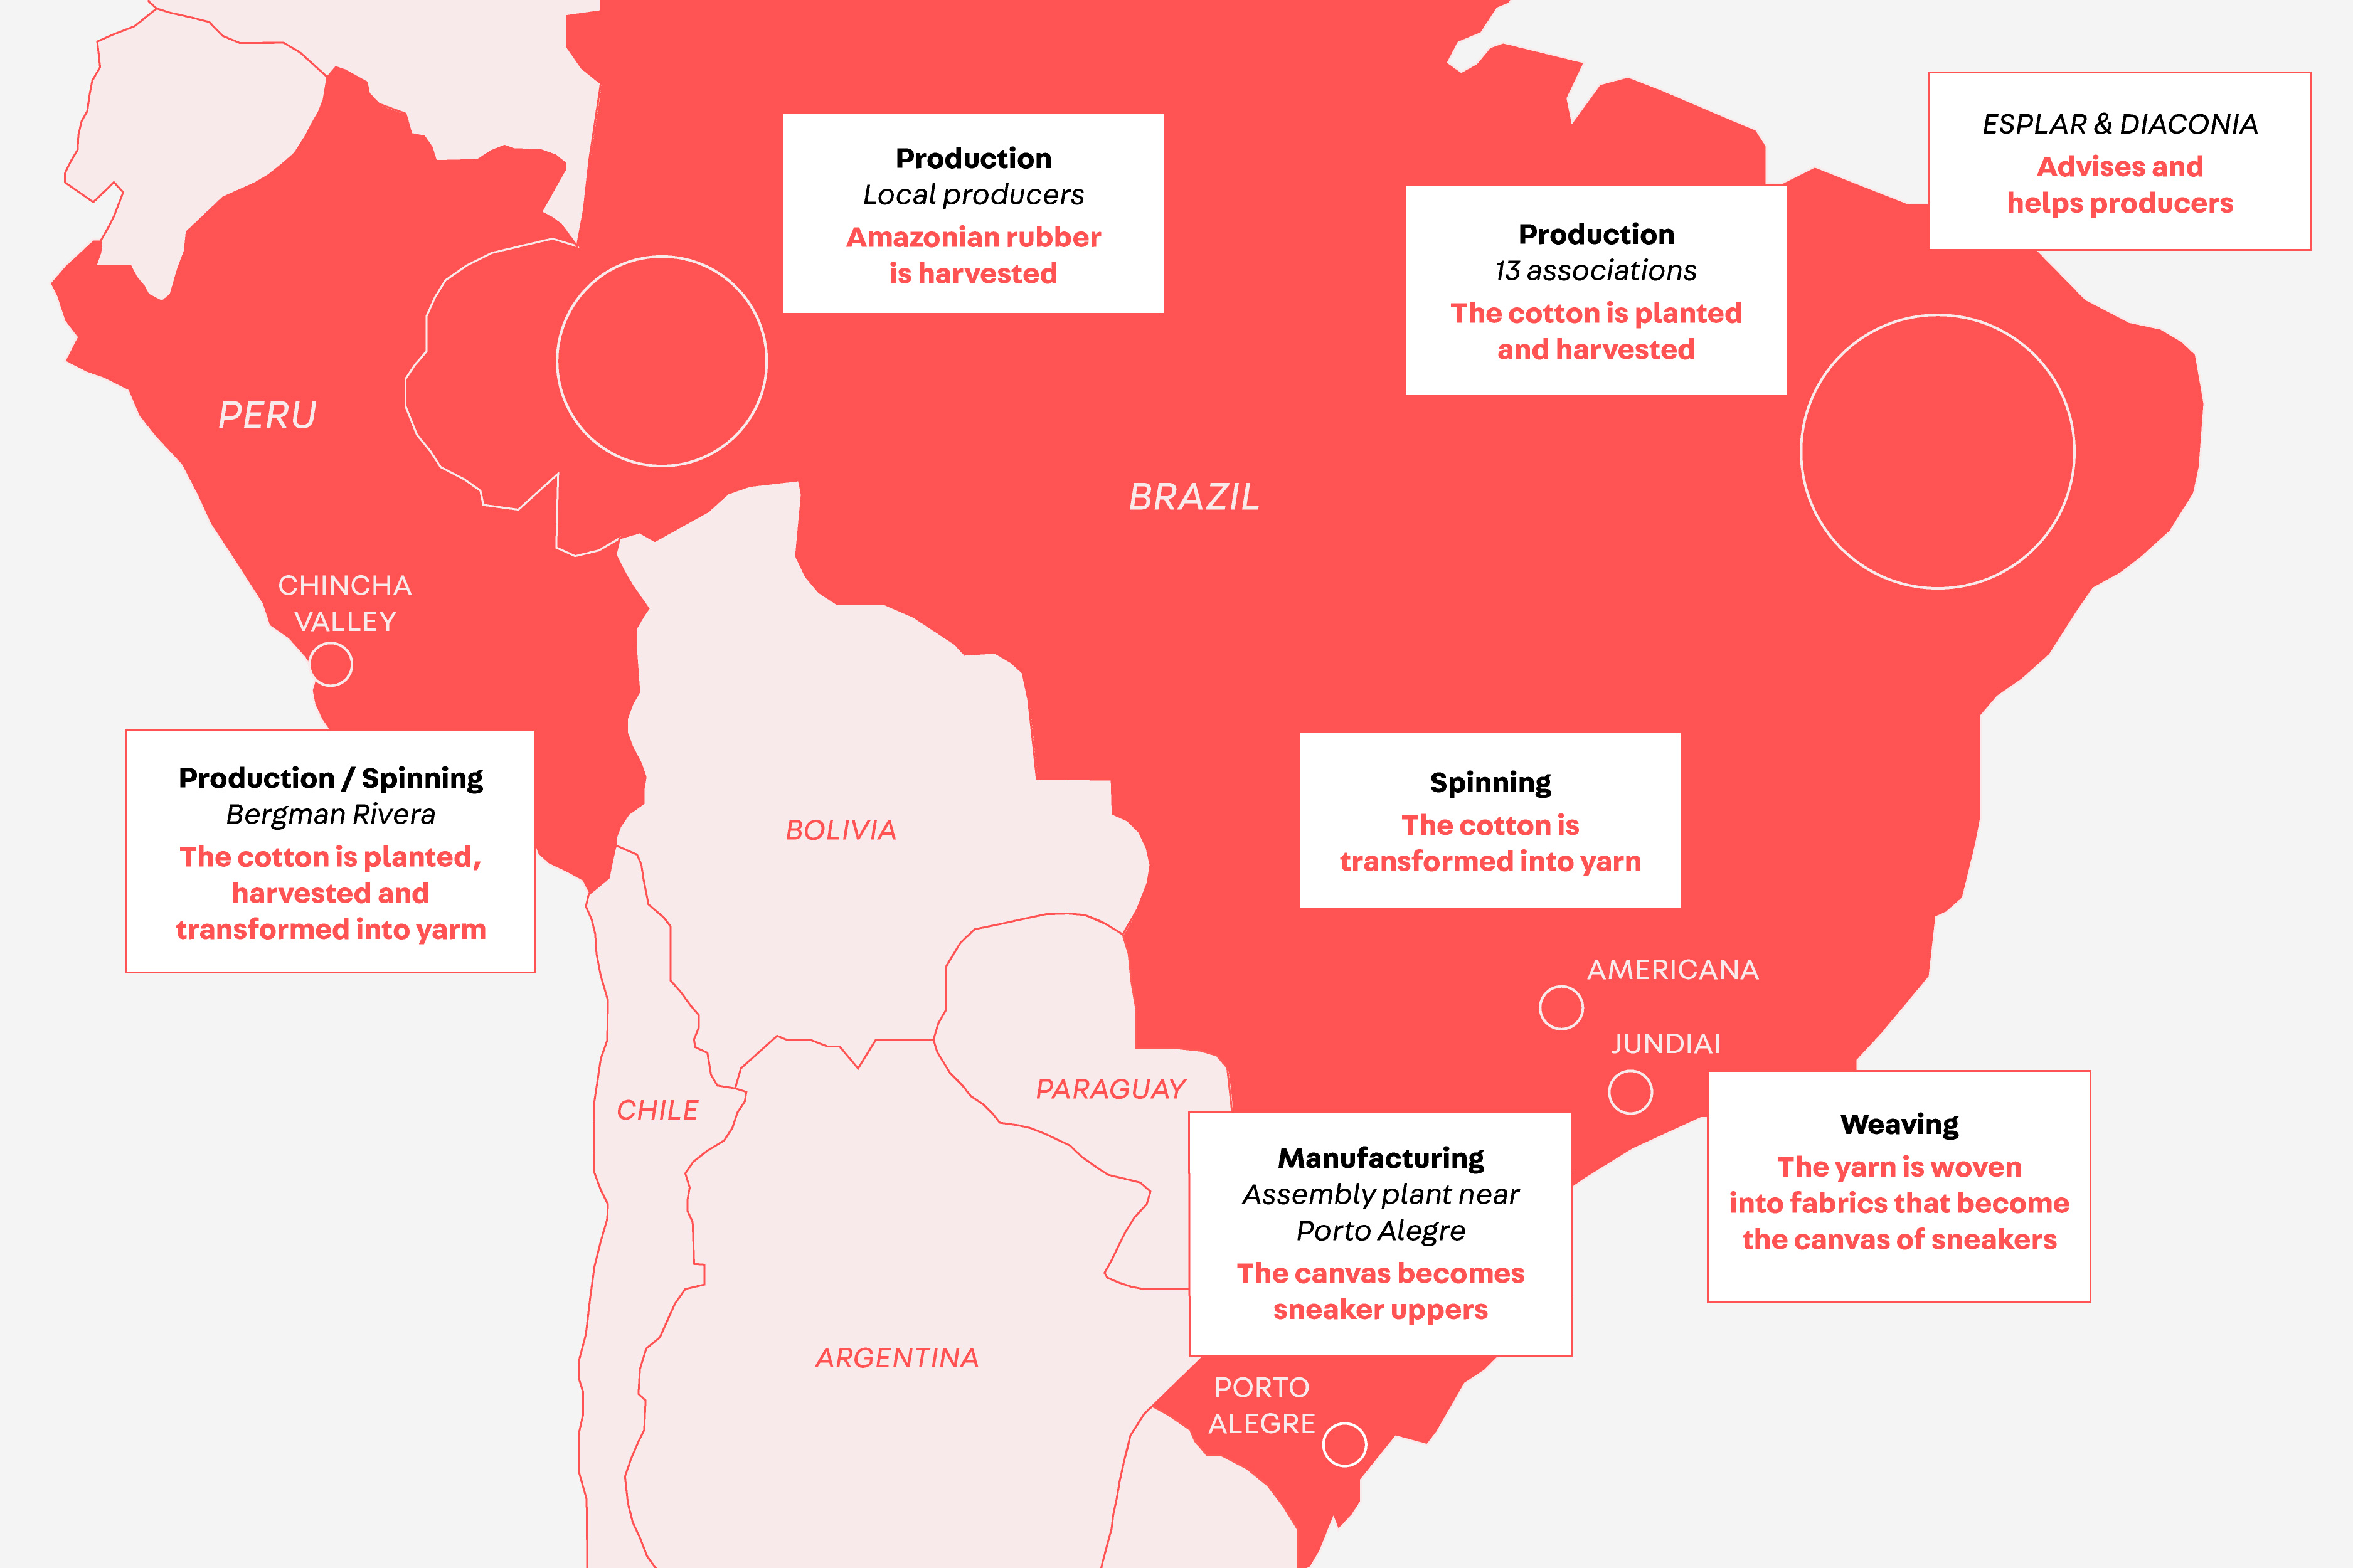 Mapa da América do Sul demonstrando os países envolvidos na etapa de produção de tênis VERT/VEJA